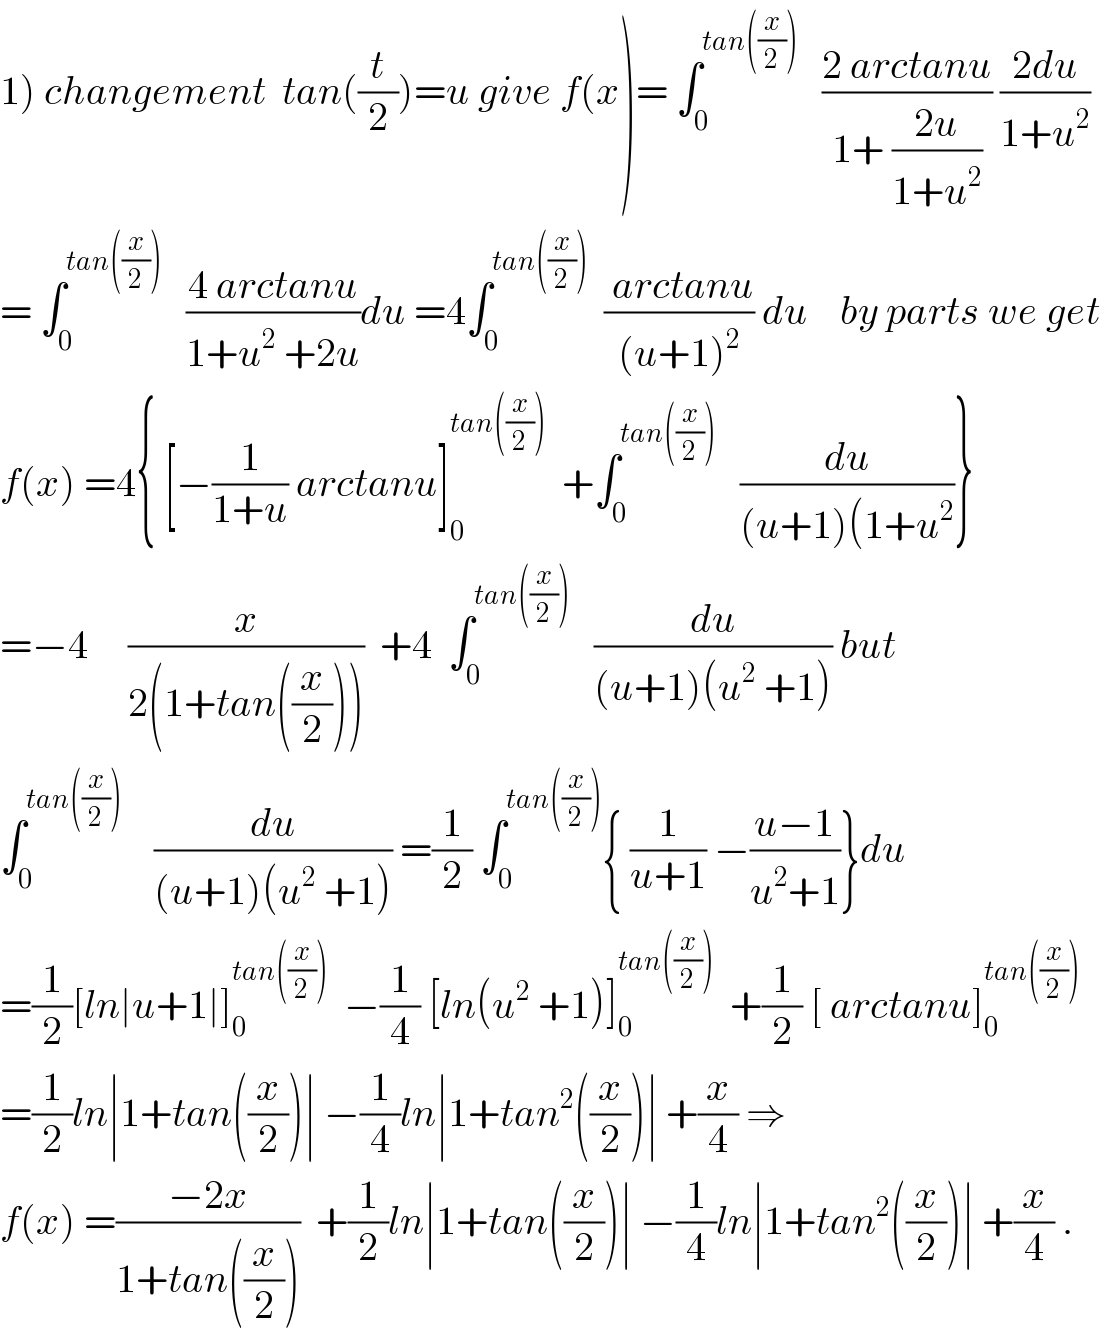 1) changement  tan((t/2))=u give f(x)= ∫_0 ^(tan((x/2)))    ((2 arctanu)/(1+ ((2u)/(1+u^2 )))) ((2du)/(1+u^2 ))  = ∫_0 ^(tan((x/2)))    ((4 arctanu)/(1+u^2  +2u))du =4∫_0 ^(tan((x/2)))   (( arctanu)/((u+1)^2 )) du    by parts we get  f(x) =4{ [−(1/(1+u)) arctanu]_0 ^(tan((x/2)))   +∫_0 ^(tan((x/2)))    (du/((u+1)(1+u^2 ))}  =−4     (x/(2(1+tan((x/2)))))  +4  ∫_0 ^(tan((x/2)))    (du/((u+1)(u^2  +1))) but  ∫_0 ^(tan((x/2)))     (du/((u+1)(u^2  +1))) =(1/2) ∫_0 ^(tan((x/2))) { (1/(u+1)) −((u−1)/(u^2 +1))}du  =(1/2)[ln∣u+1∣]_0 ^(tan((x/2)))   −(1/4) [ln(u^2  +1)]_0 ^(tan((x/2)))   +(1/2) [ arctanu]_0 ^(tan((x/2)))   =(1/2)ln∣1+tan((x/2))∣ −(1/4)ln∣1+tan^2 ((x/2))∣ +(x/4) ⇒  f(x) =((−2x)/(1+tan((x/2))))  +(1/2)ln∣1+tan((x/2))∣ −(1/4)ln∣1+tan^2 ((x/2))∣ +(x/4) .  